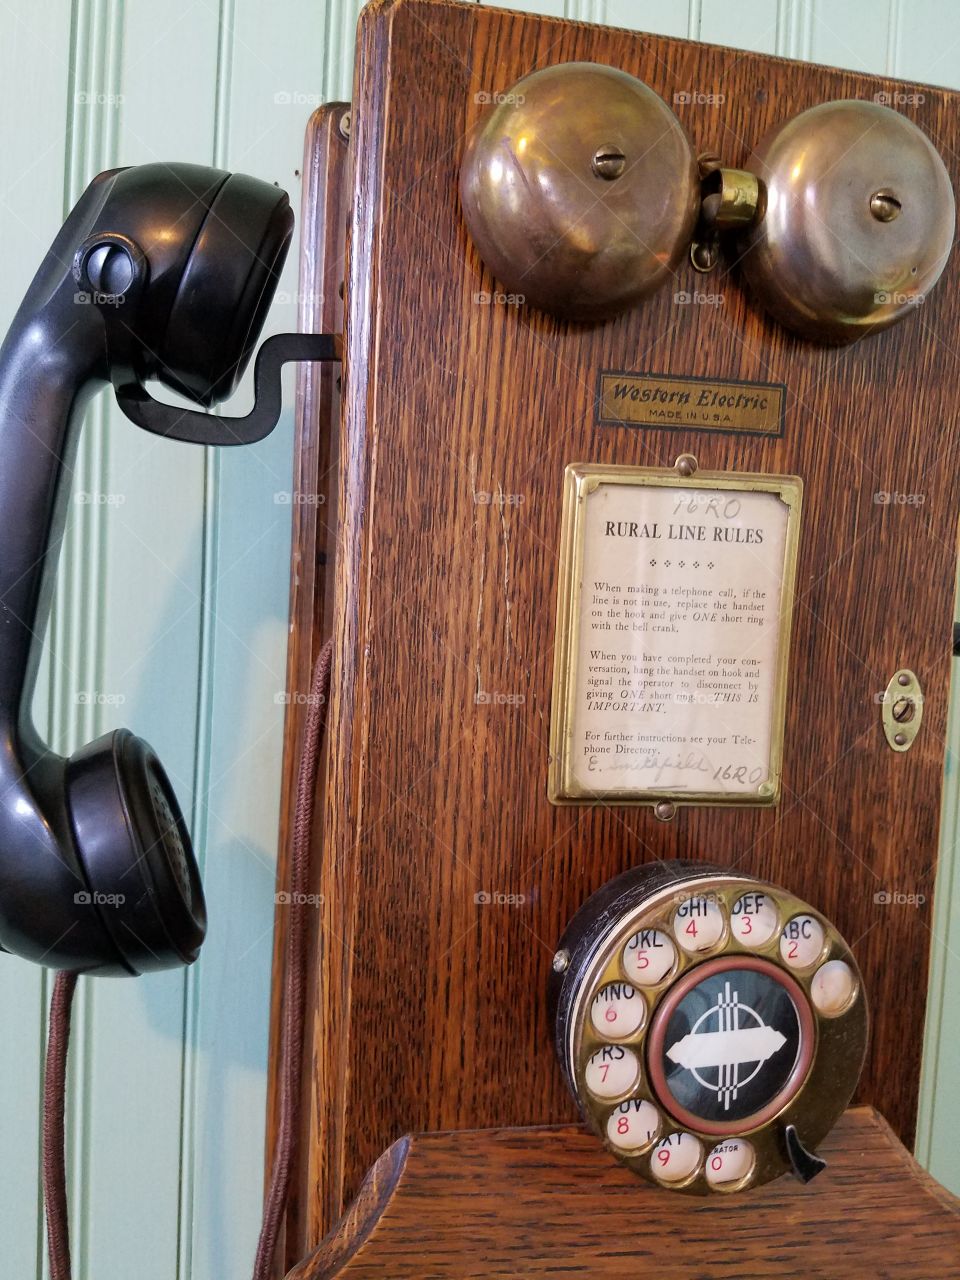 Antique phone close up